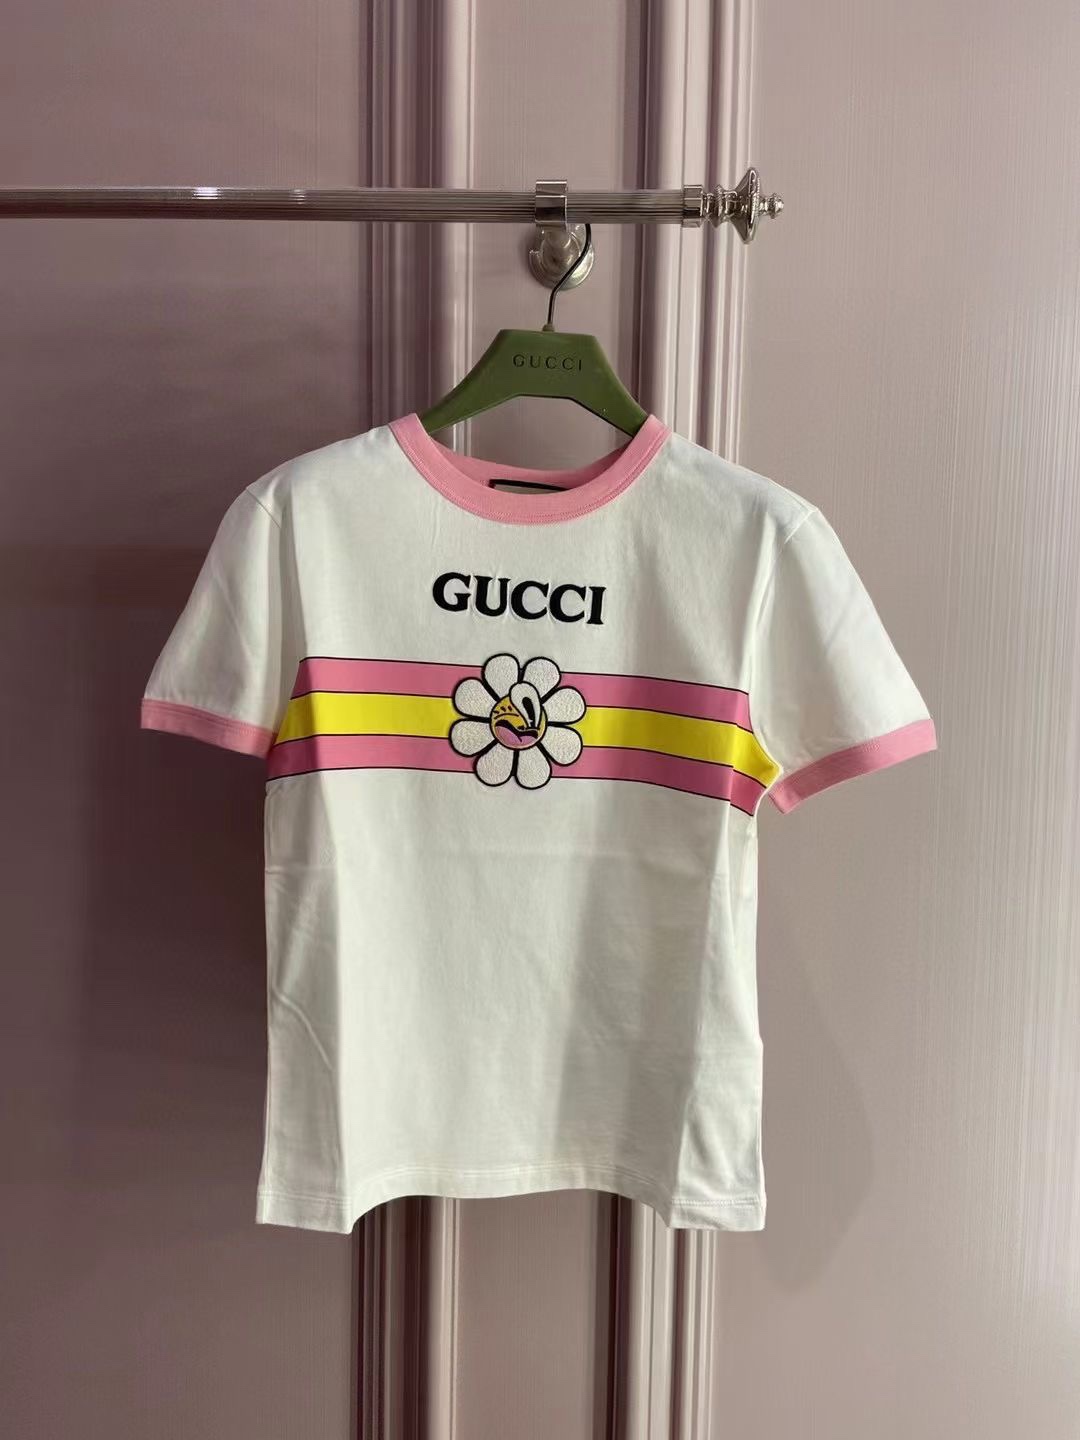 Gucci Abbigliamento T-Shirt Ricamo Cotone Collezione Primavera